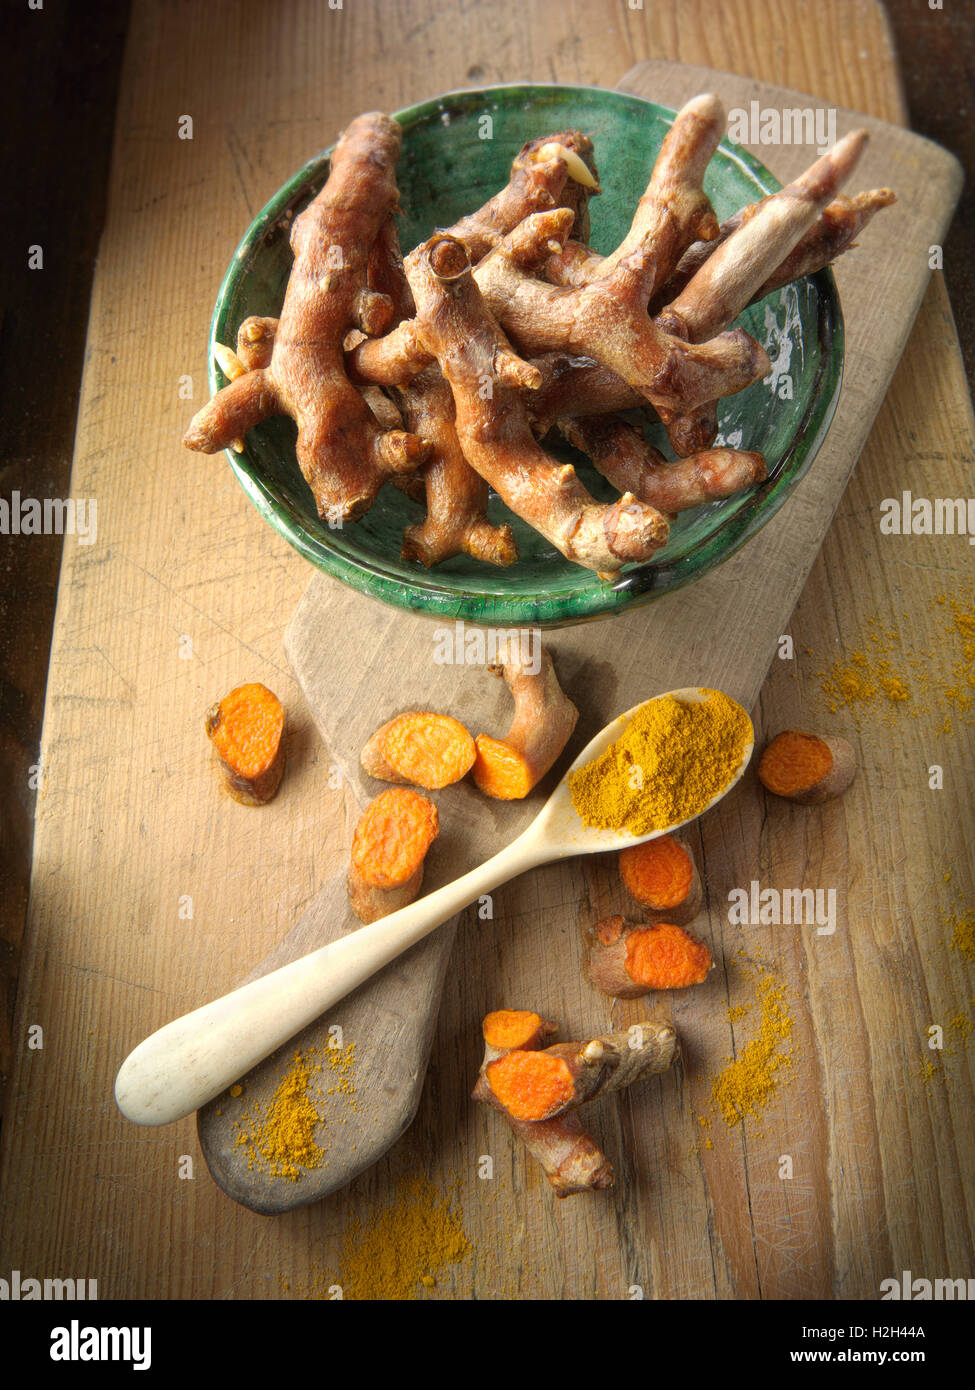 Fresh whole and cut turmeric or tumeric root (Curcuma longa) Stock Photo